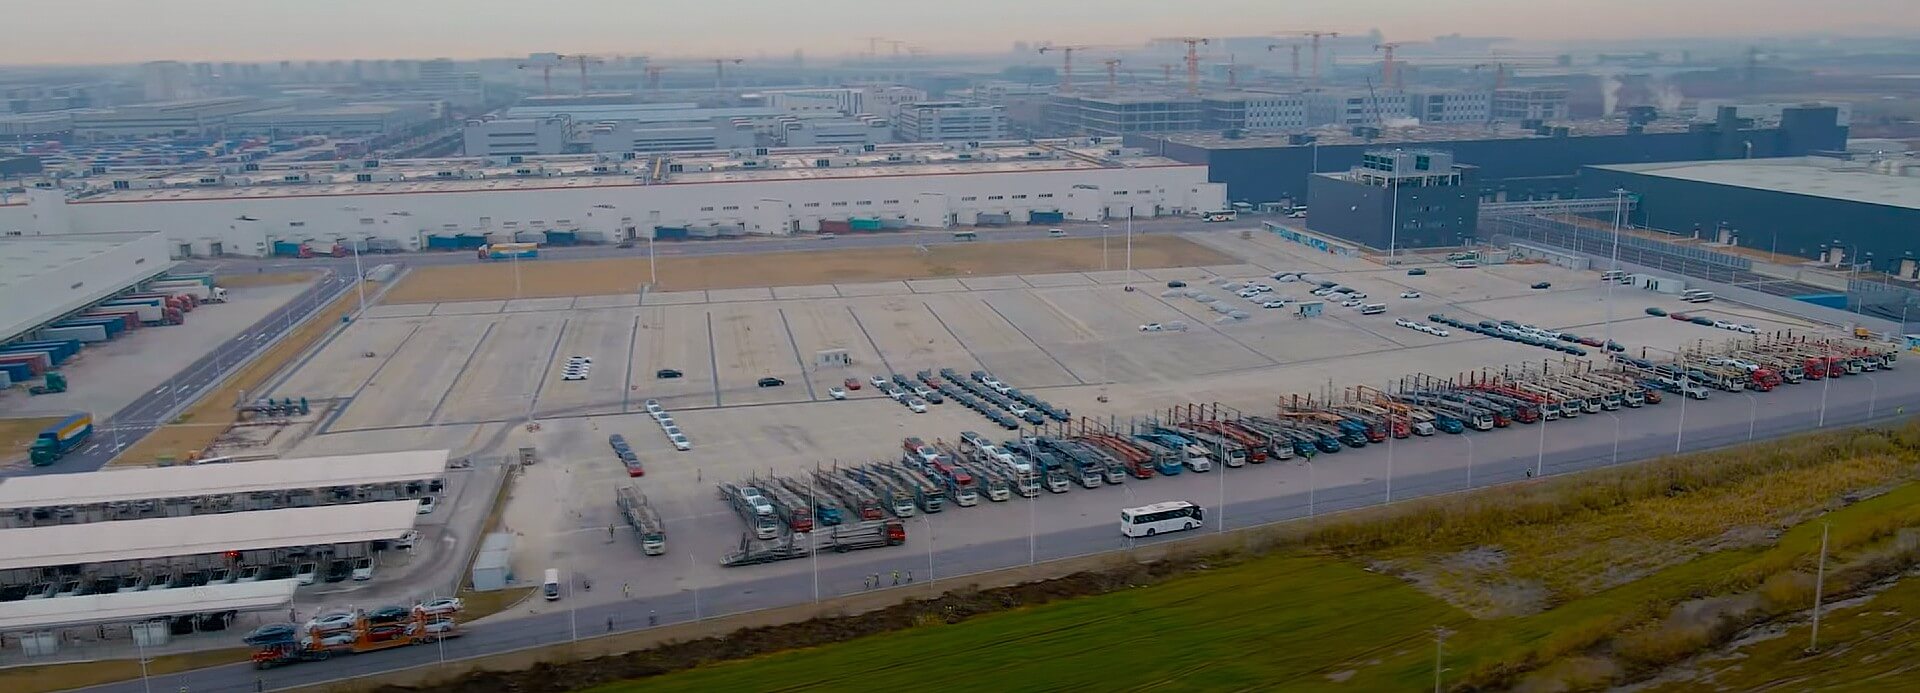 Tesla Giga Shanghai pris d’assaut par des camions de livraison alors que la production reprend